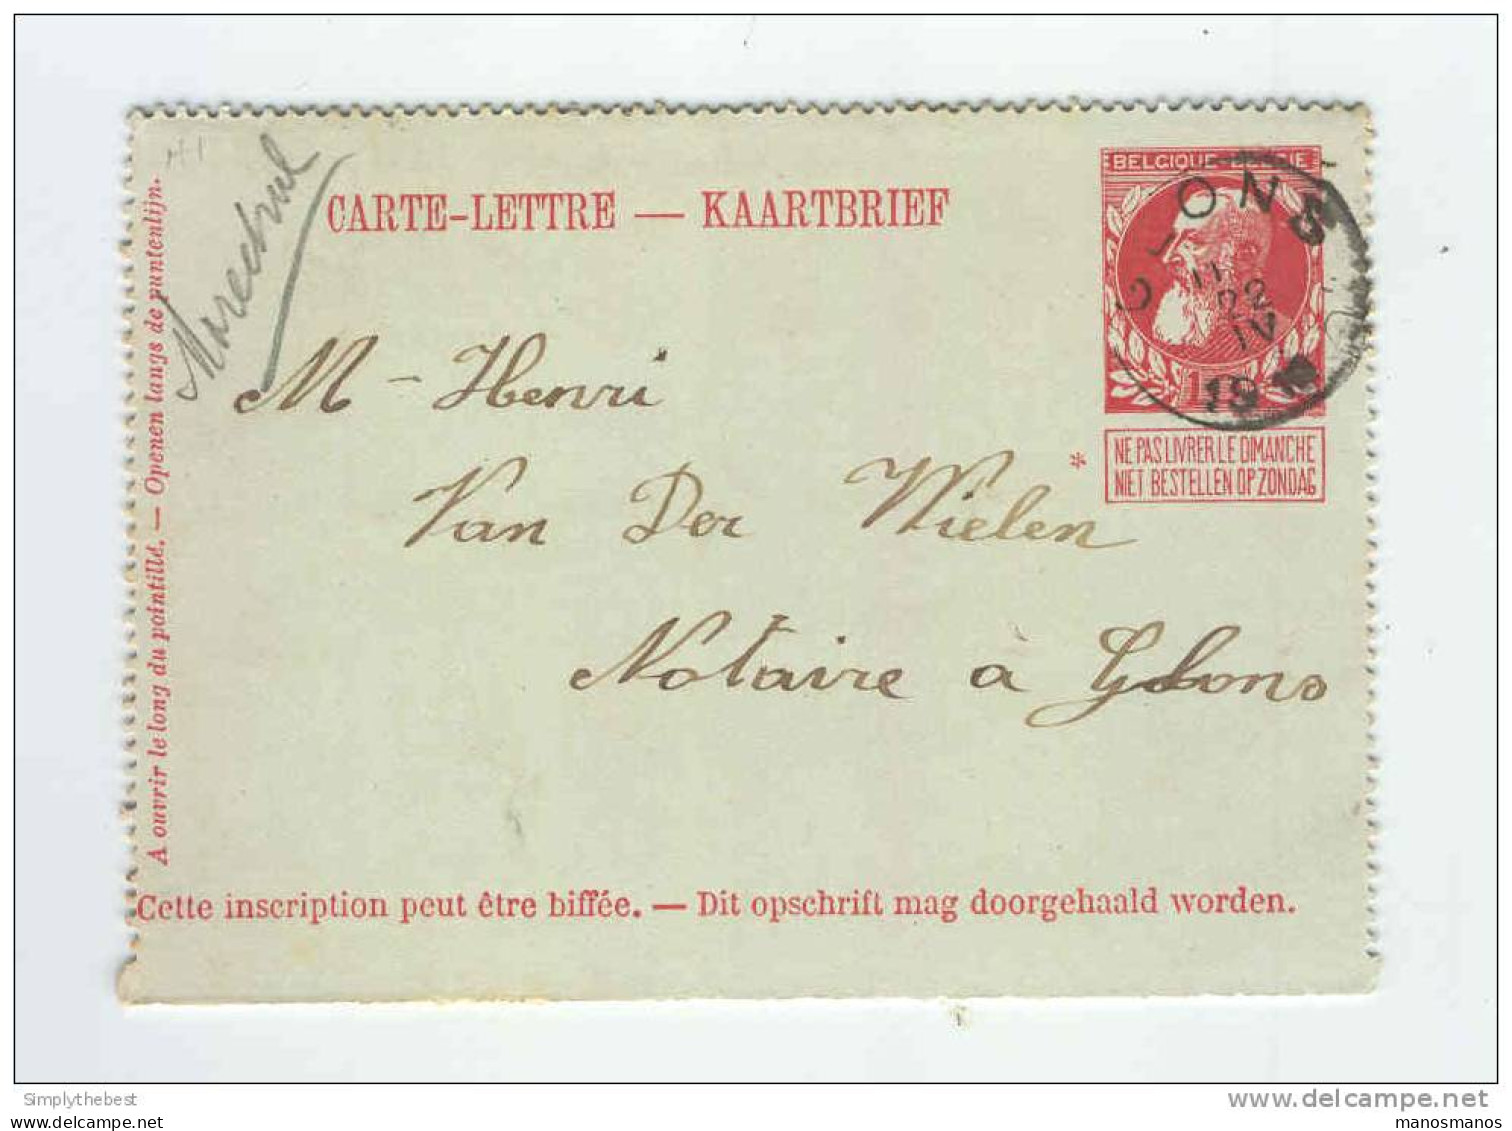 Carte-Lettre Grosse Barbe Cachet GLONS 1912 Vers Notaire En Ville - Origine Manuscrite PAIFVE  -- B3/333 - Letter-Cards